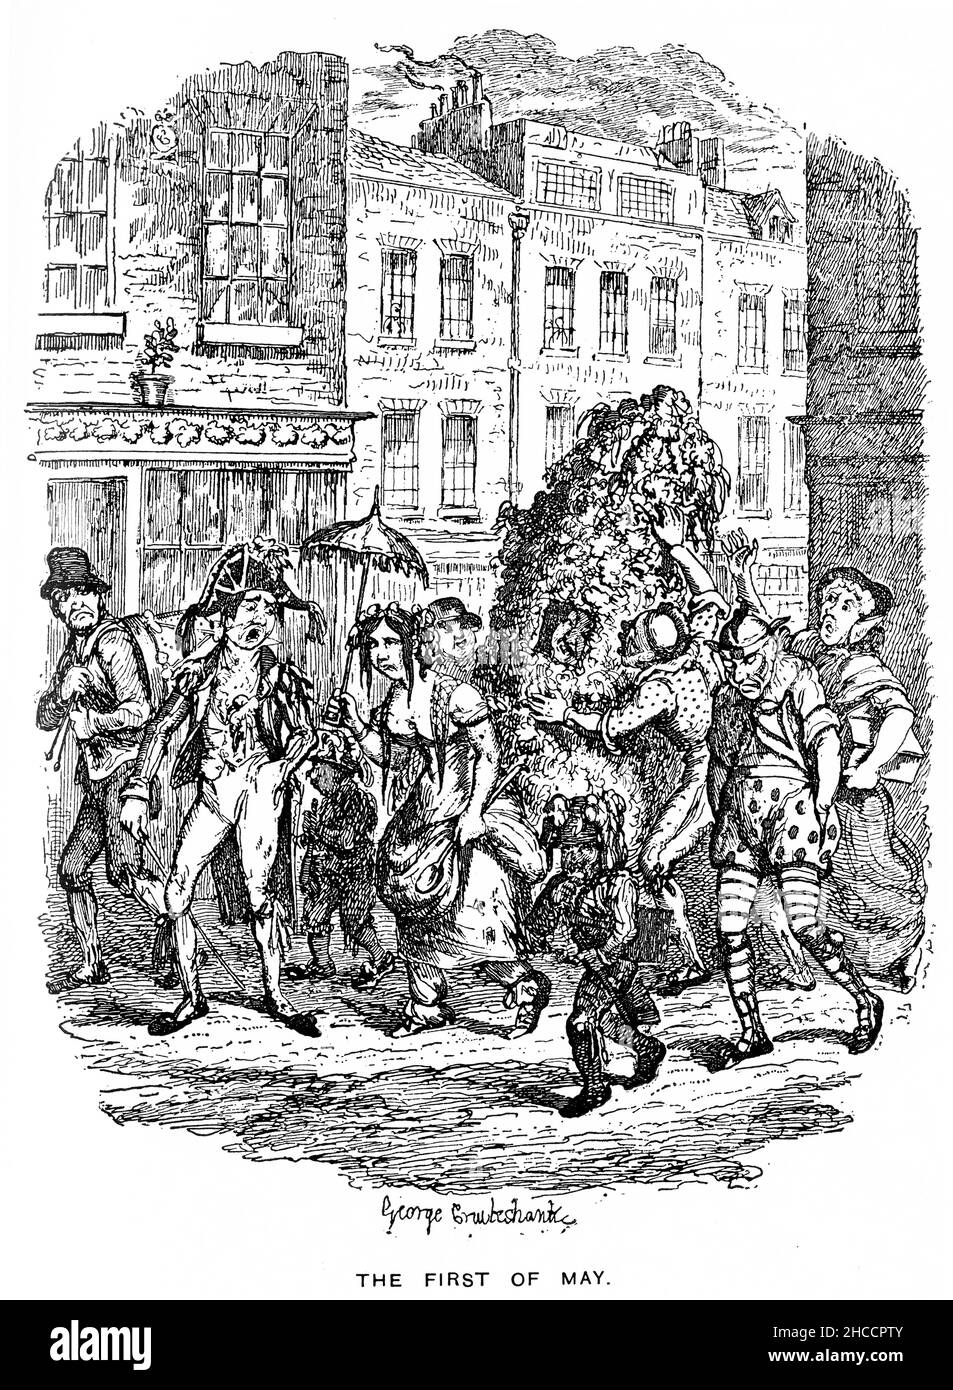 Gravur der Maifeiertage, eine Szene aus einem Buch aus der viktorianischen Zeit von Charles Dickens, veröffentlicht um 1908 Stockfoto